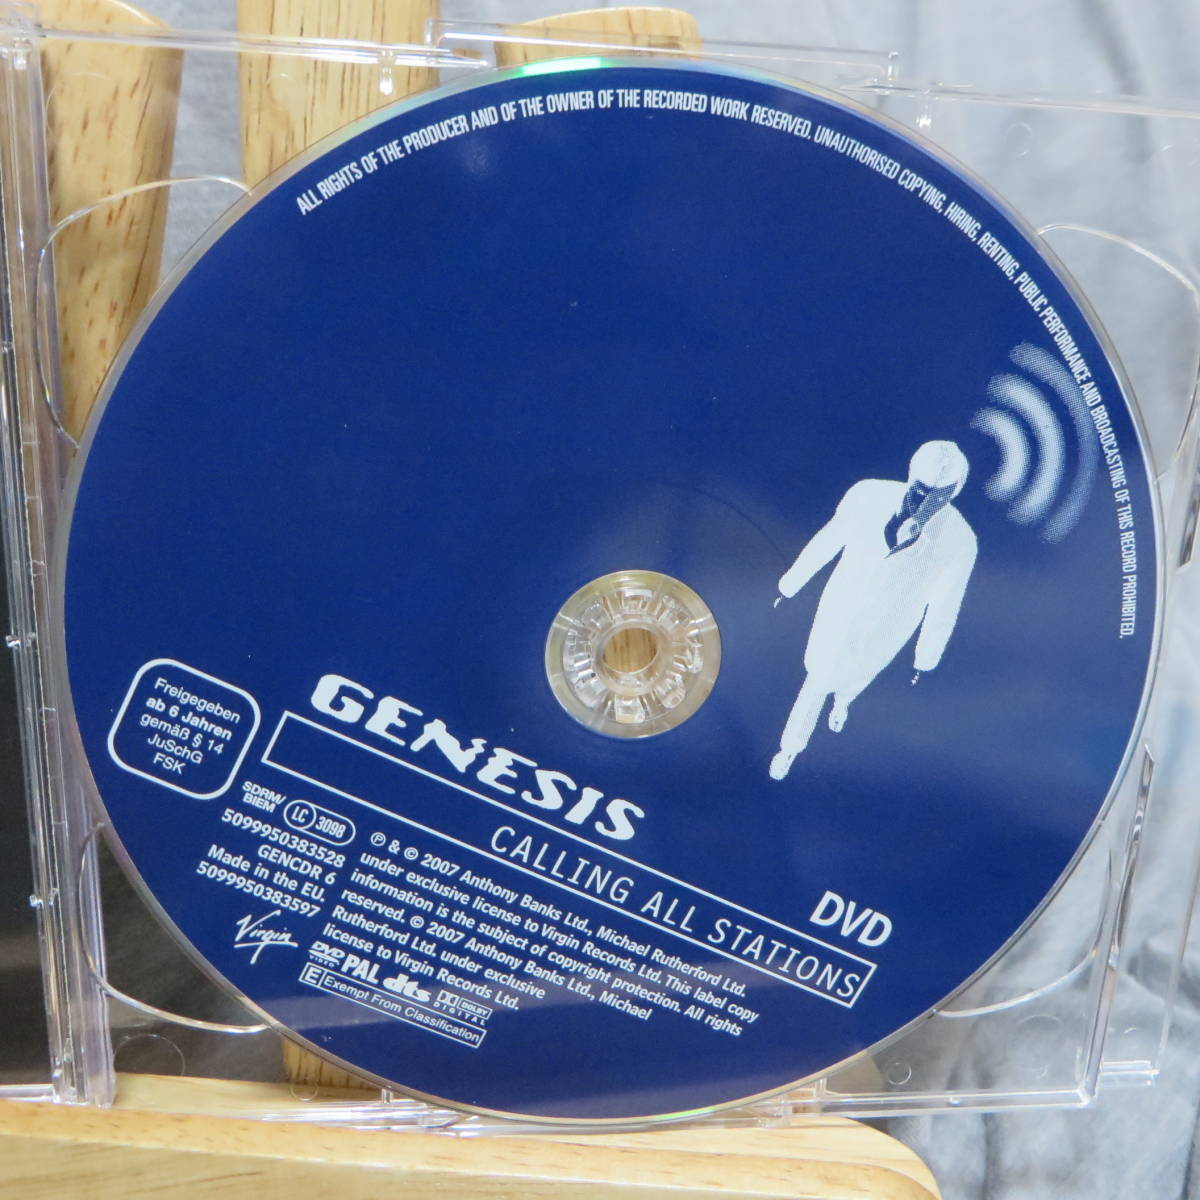 SACD+DVD GENESIS ジェネシス 「CALLING ALL STATIONS」DVDはPALです。レイ・ウィルソン_画像4